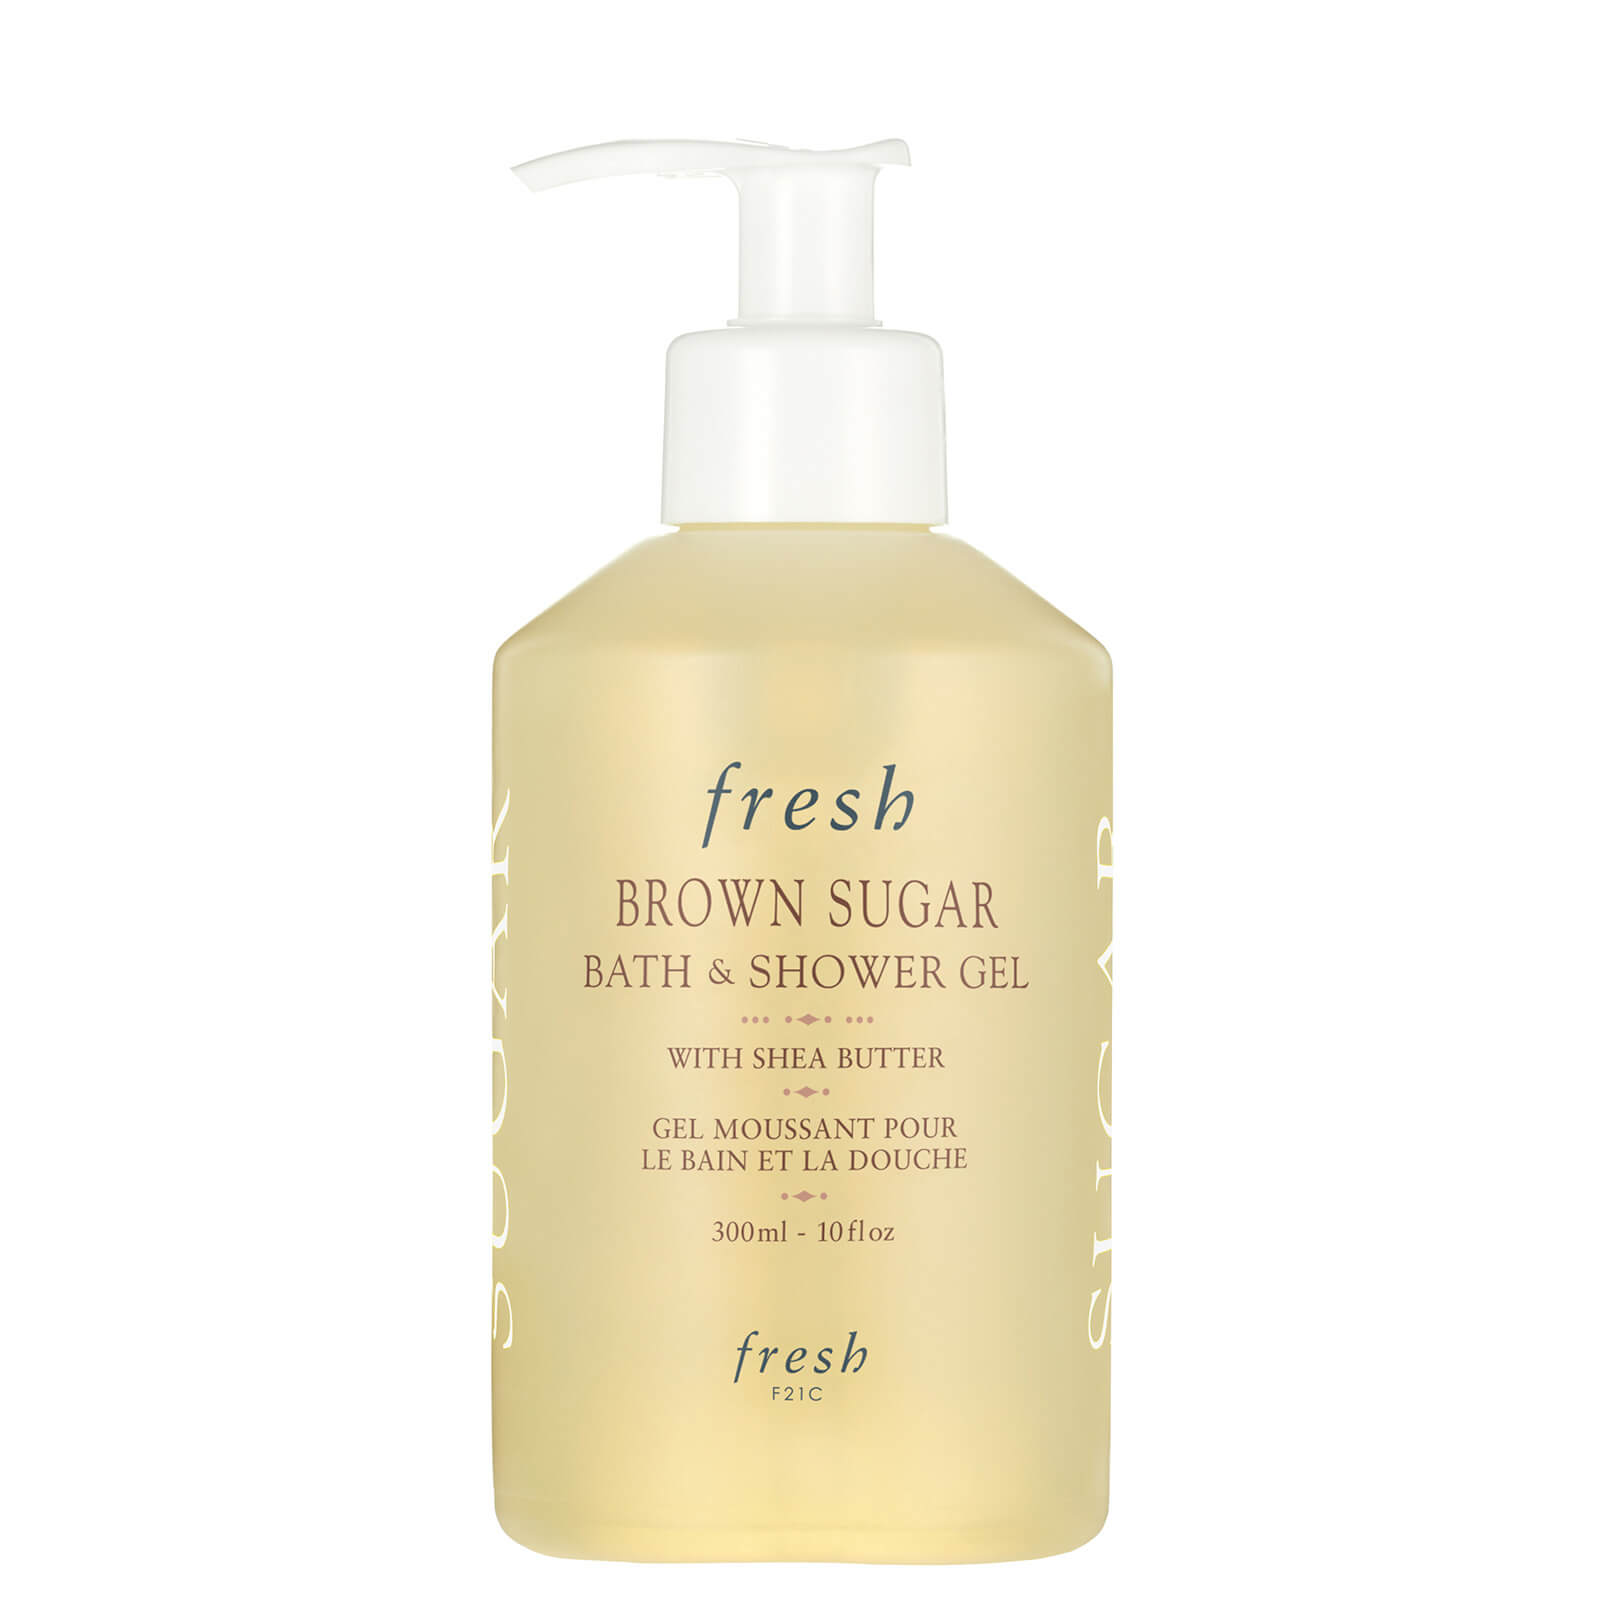 Fresh Bath & Shower Gel - Brown Sugar